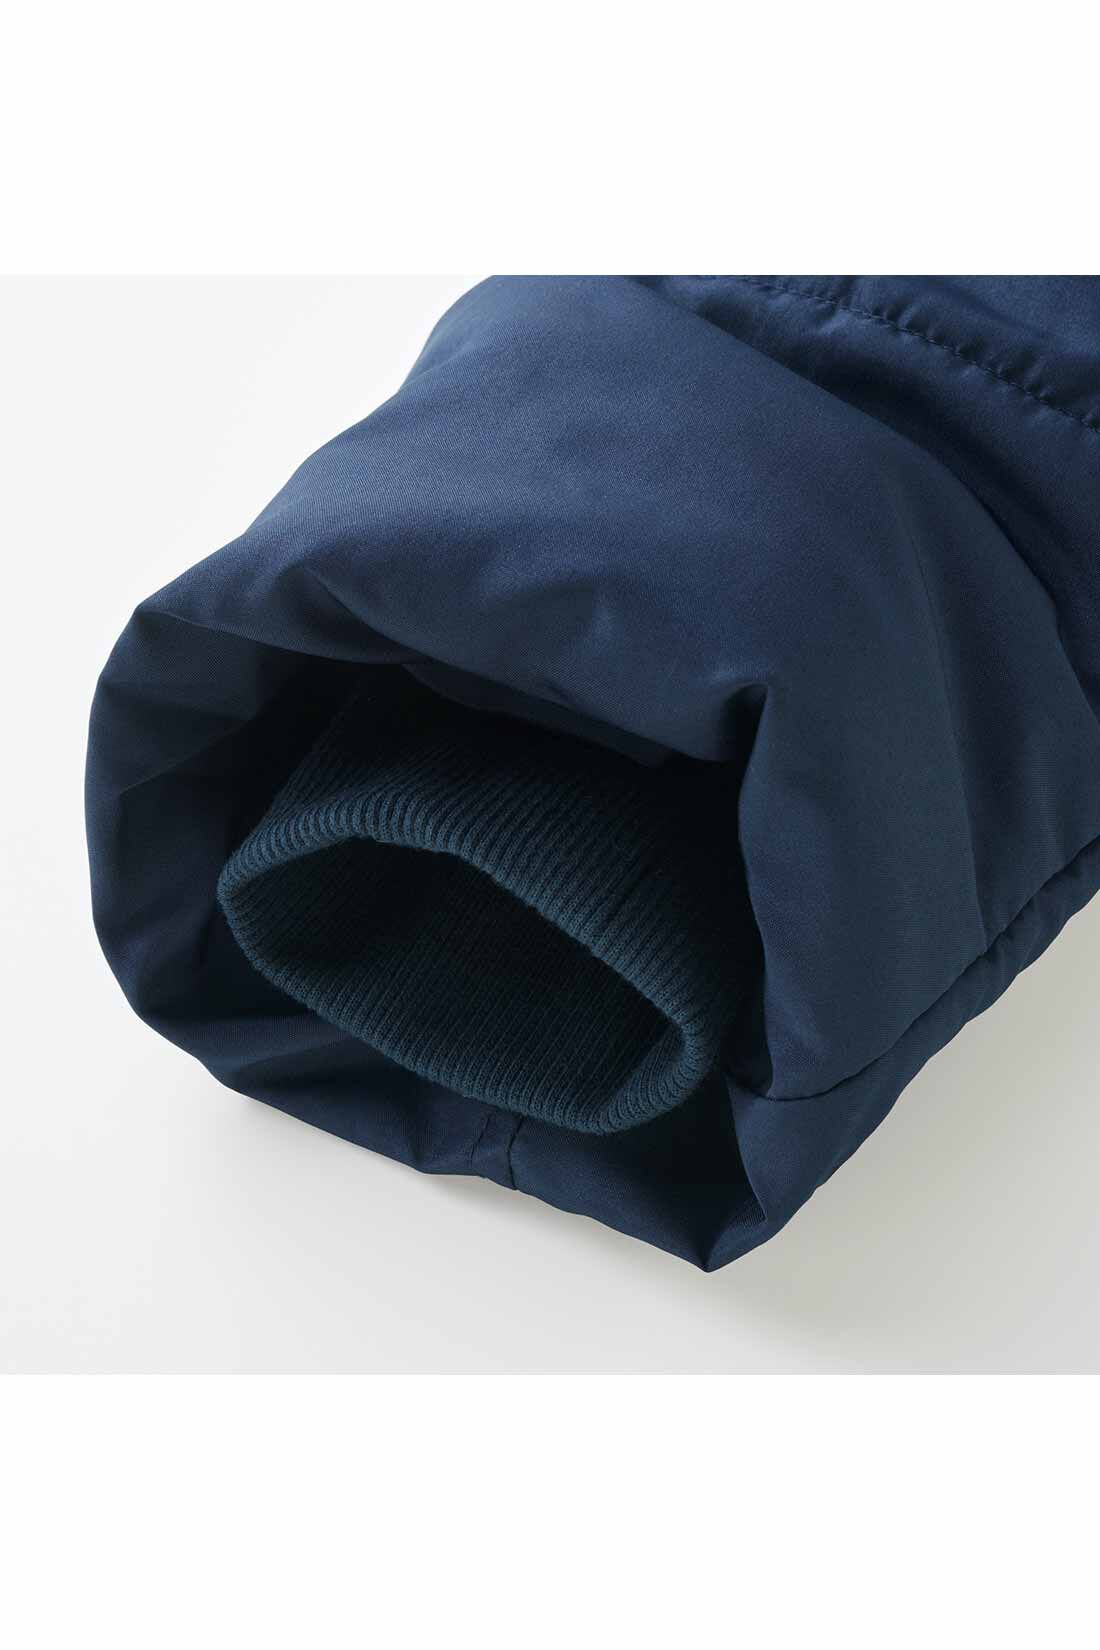 Live in  comfort|リブ イン コンフォート マフラー要らずで最高のあたたかさ！ 超ロングな寝袋ダウンコート〈ネイビー〉|袖口の内側はこっそりリブ仕立て。スースー風が入り込むのを防ぎます。